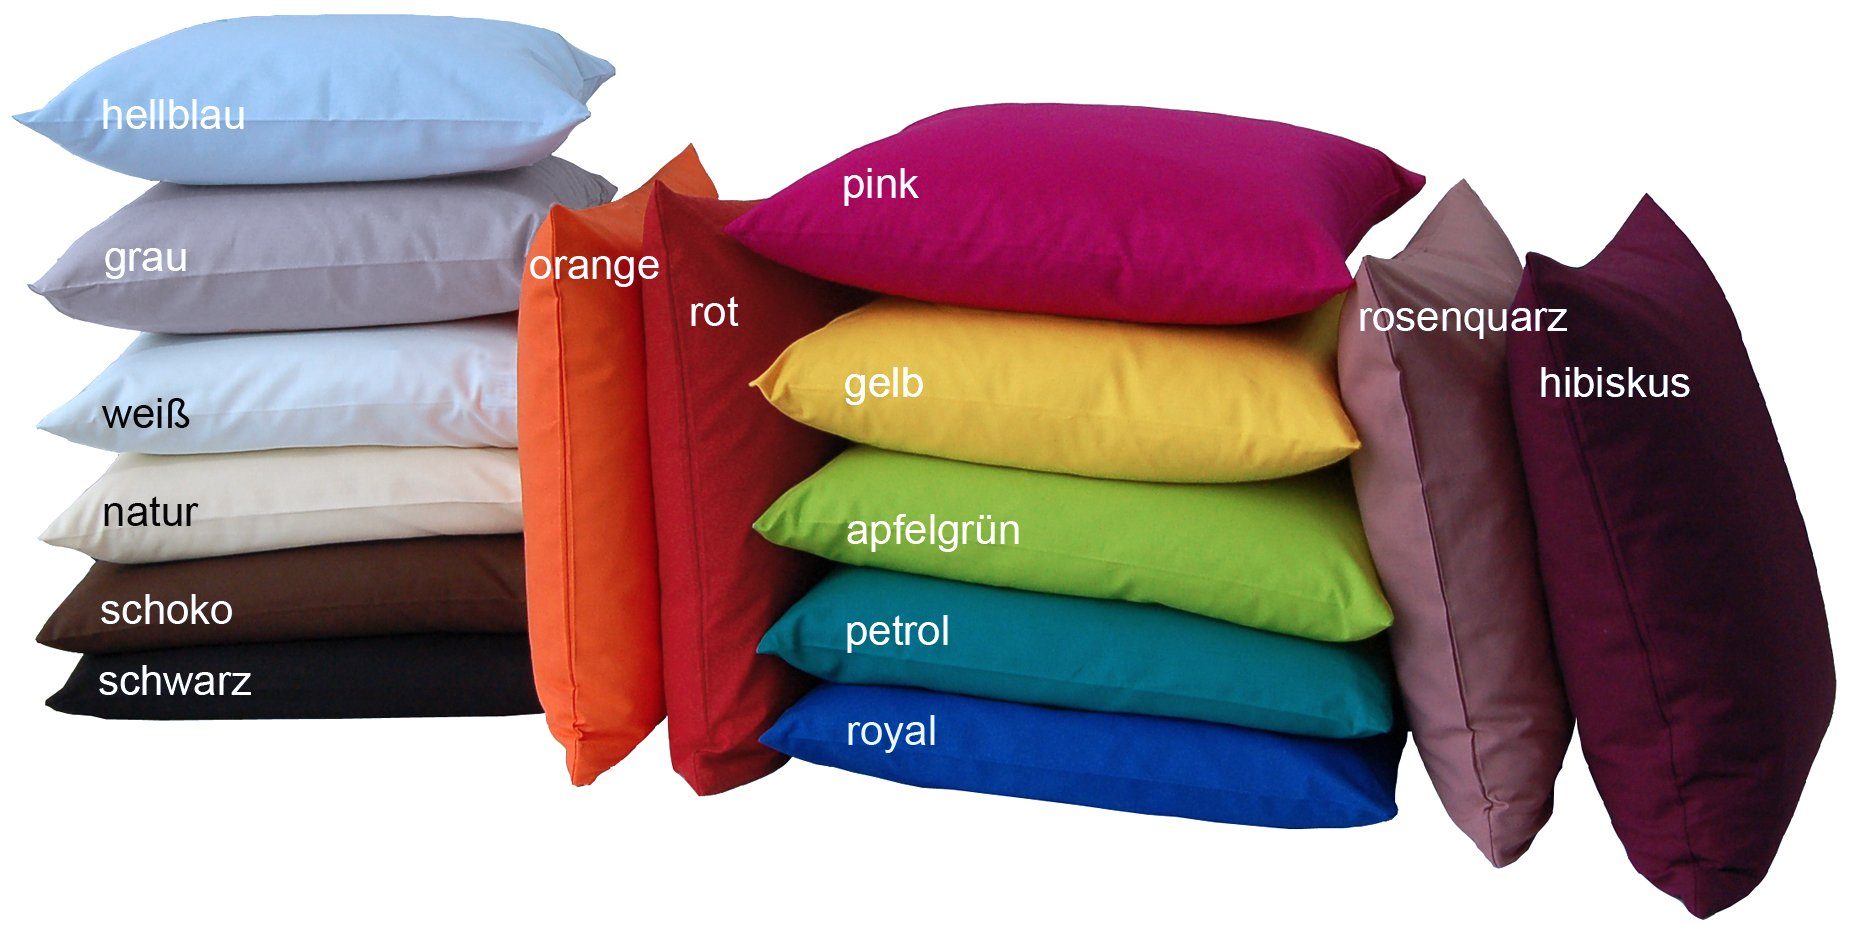 Kissenbezug »Basic«, beties, Kissenhülle ca. 40x60 cm 100% Baumwolle in  vielen kräftigen Uni-Farben (grau) online kaufen | OTTO